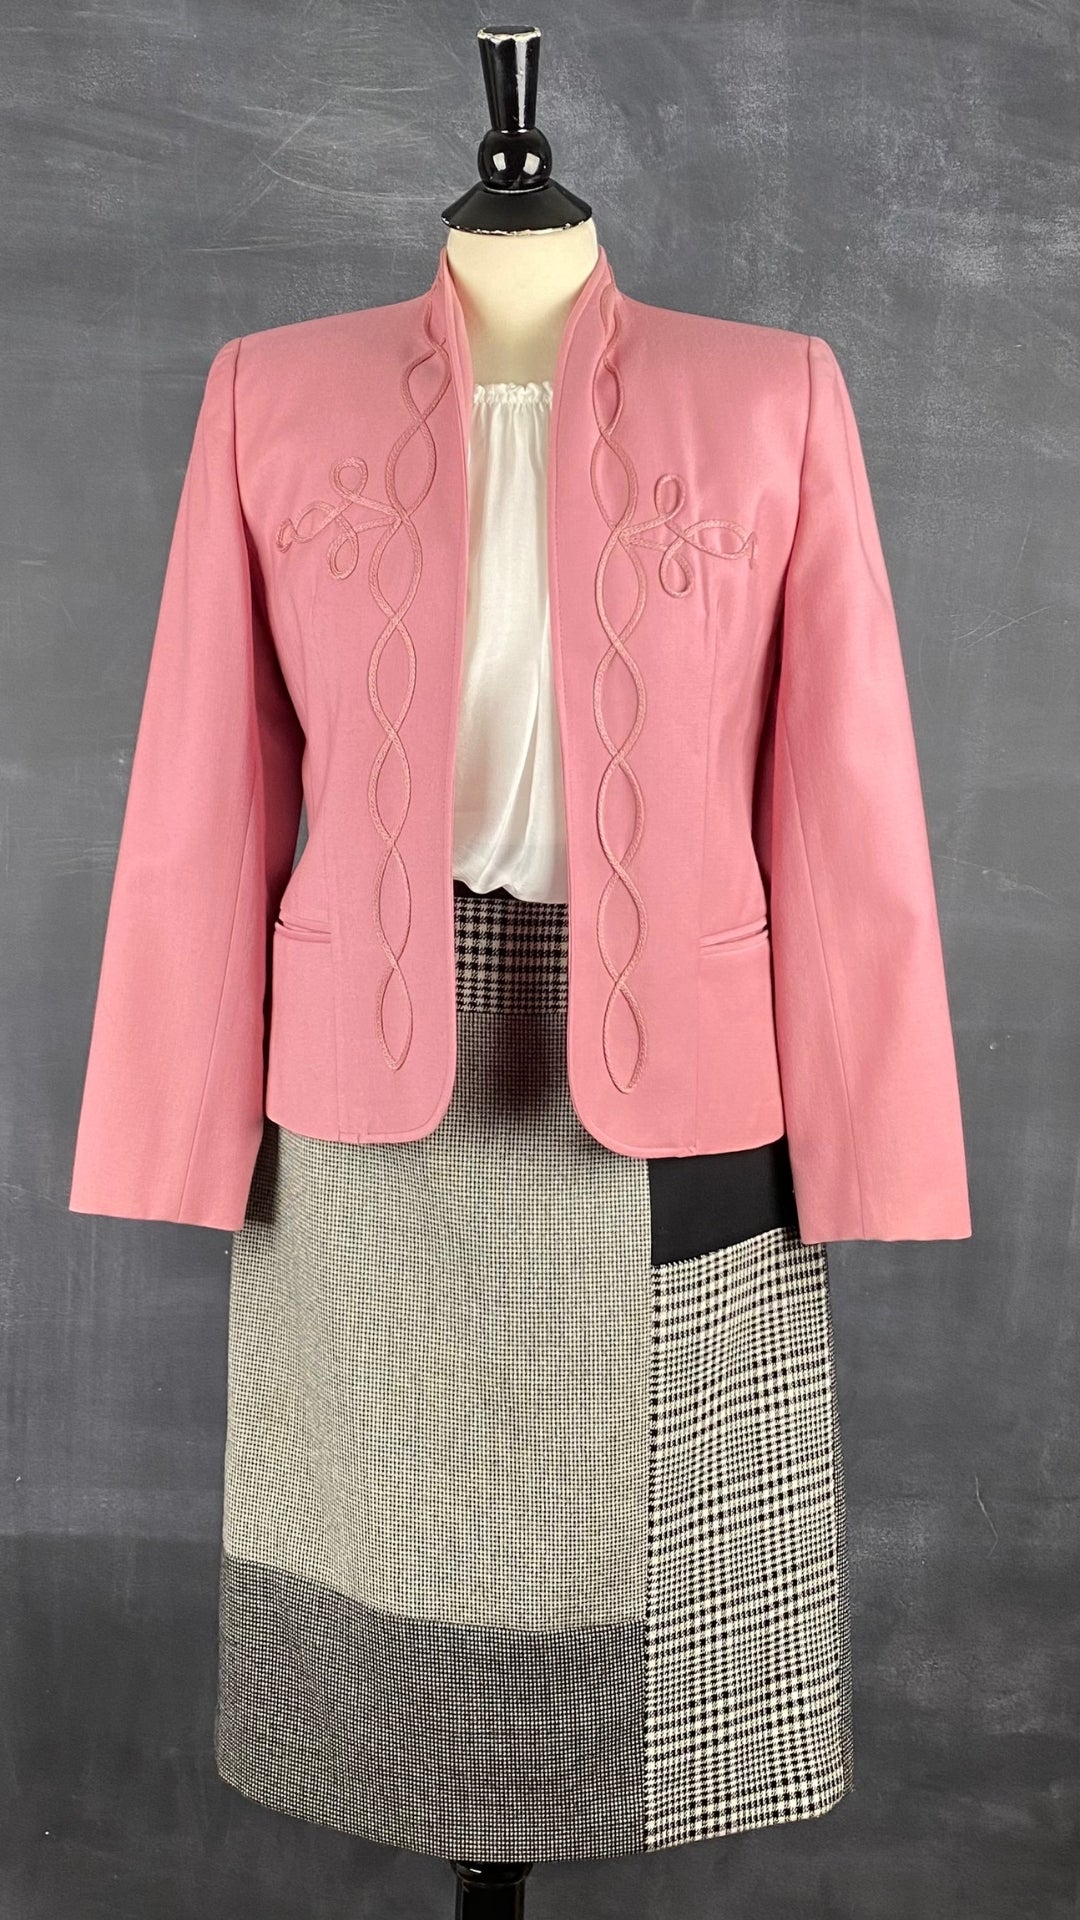 Jupe crayon en lainage à motif pied de poule Judith & Charles, taille 8. Vue de l'agencement blazer laine rose et doll blouse.